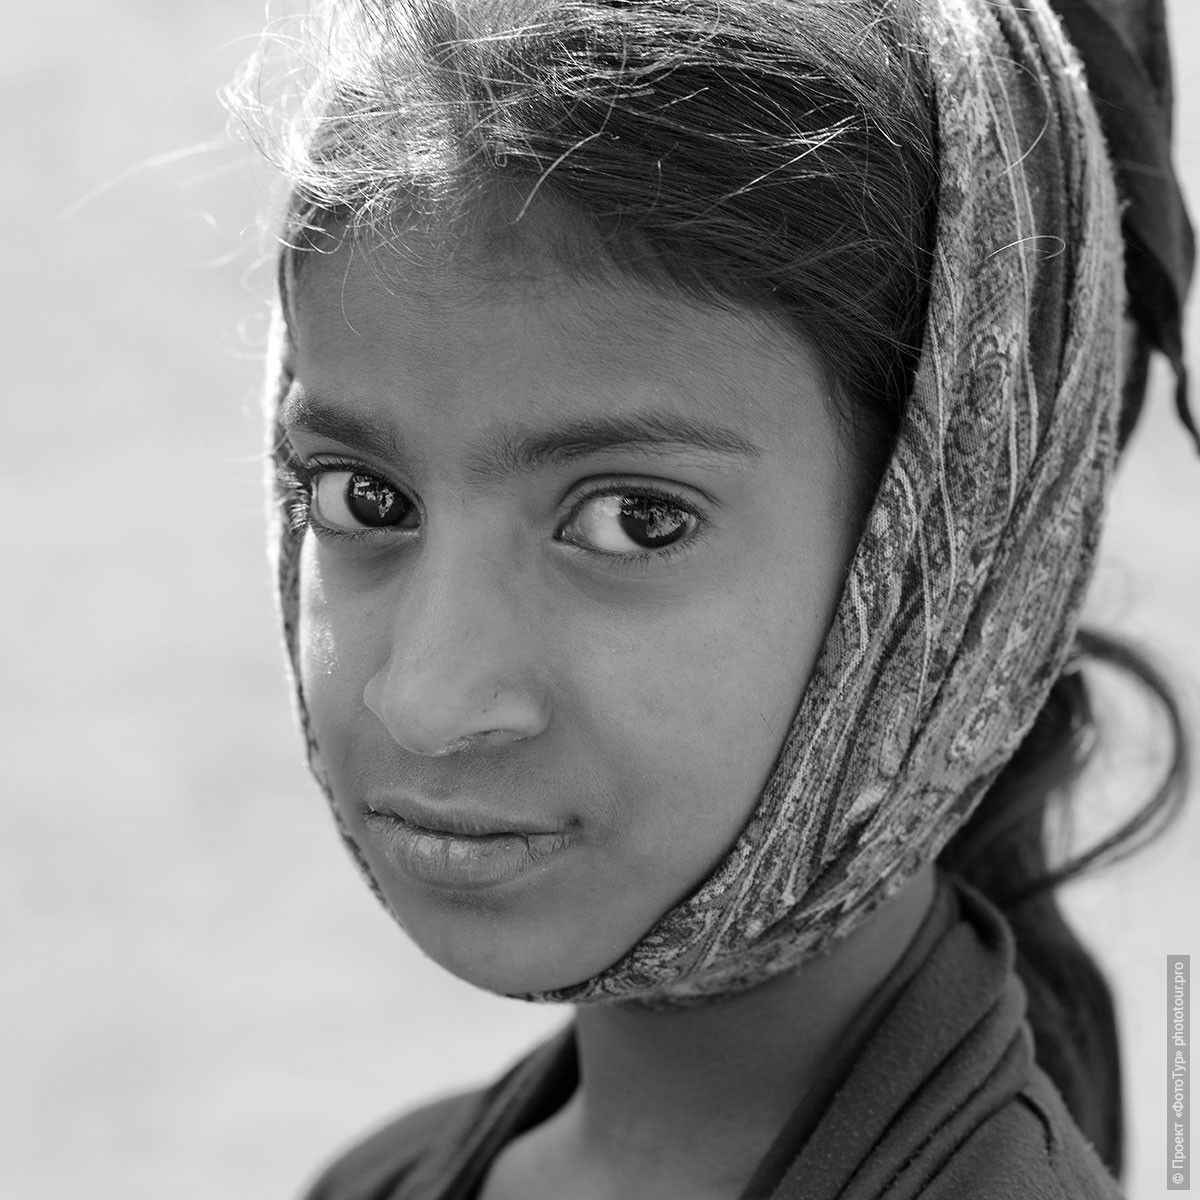 Взгляд индийской девочки, Матхура. Фотографии людей из Индии. Фототур на праздник Холи в Индию.